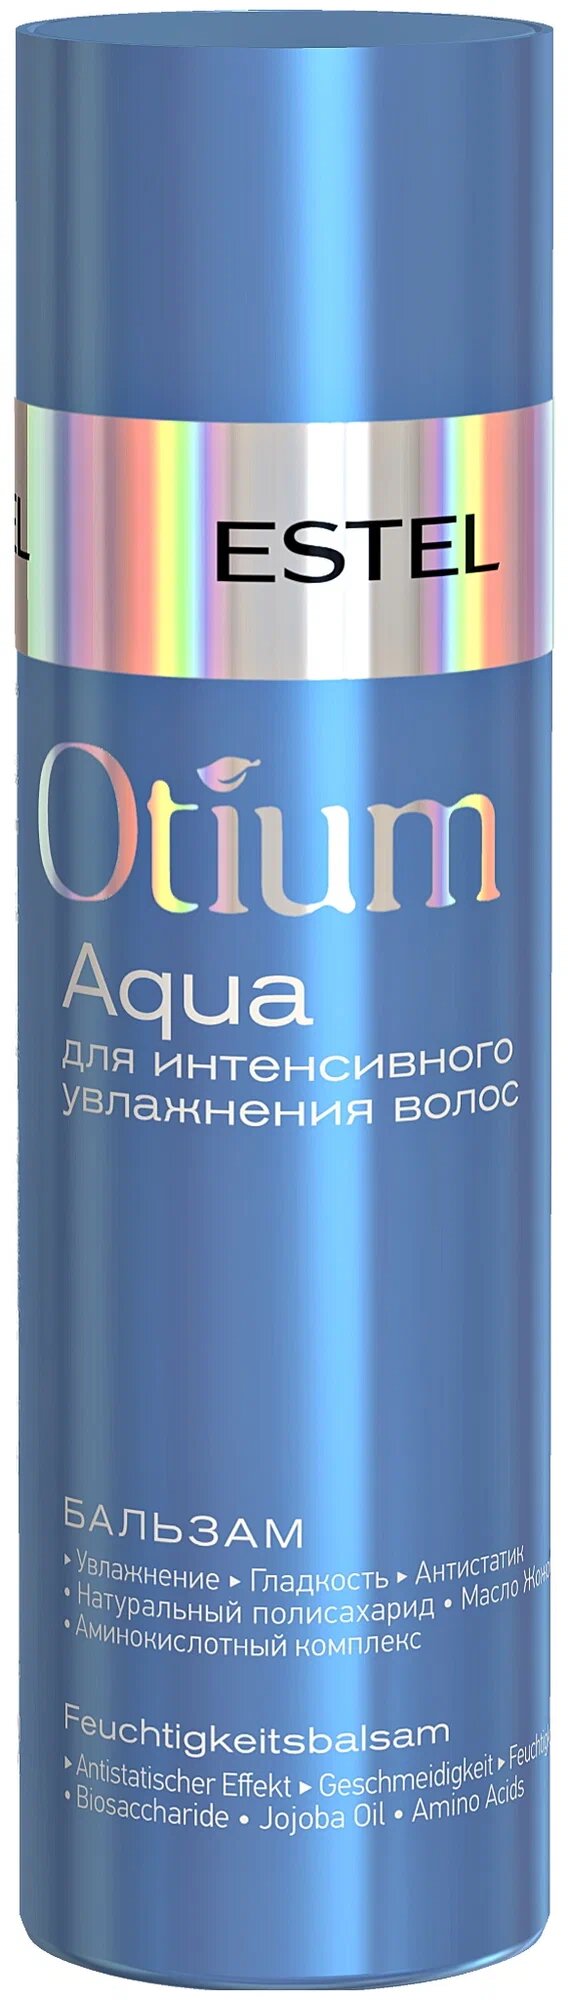 ESTEL бальзам Otium Aqua для интенсивного увлажнения, Исключительное увлажнение, 200 мл